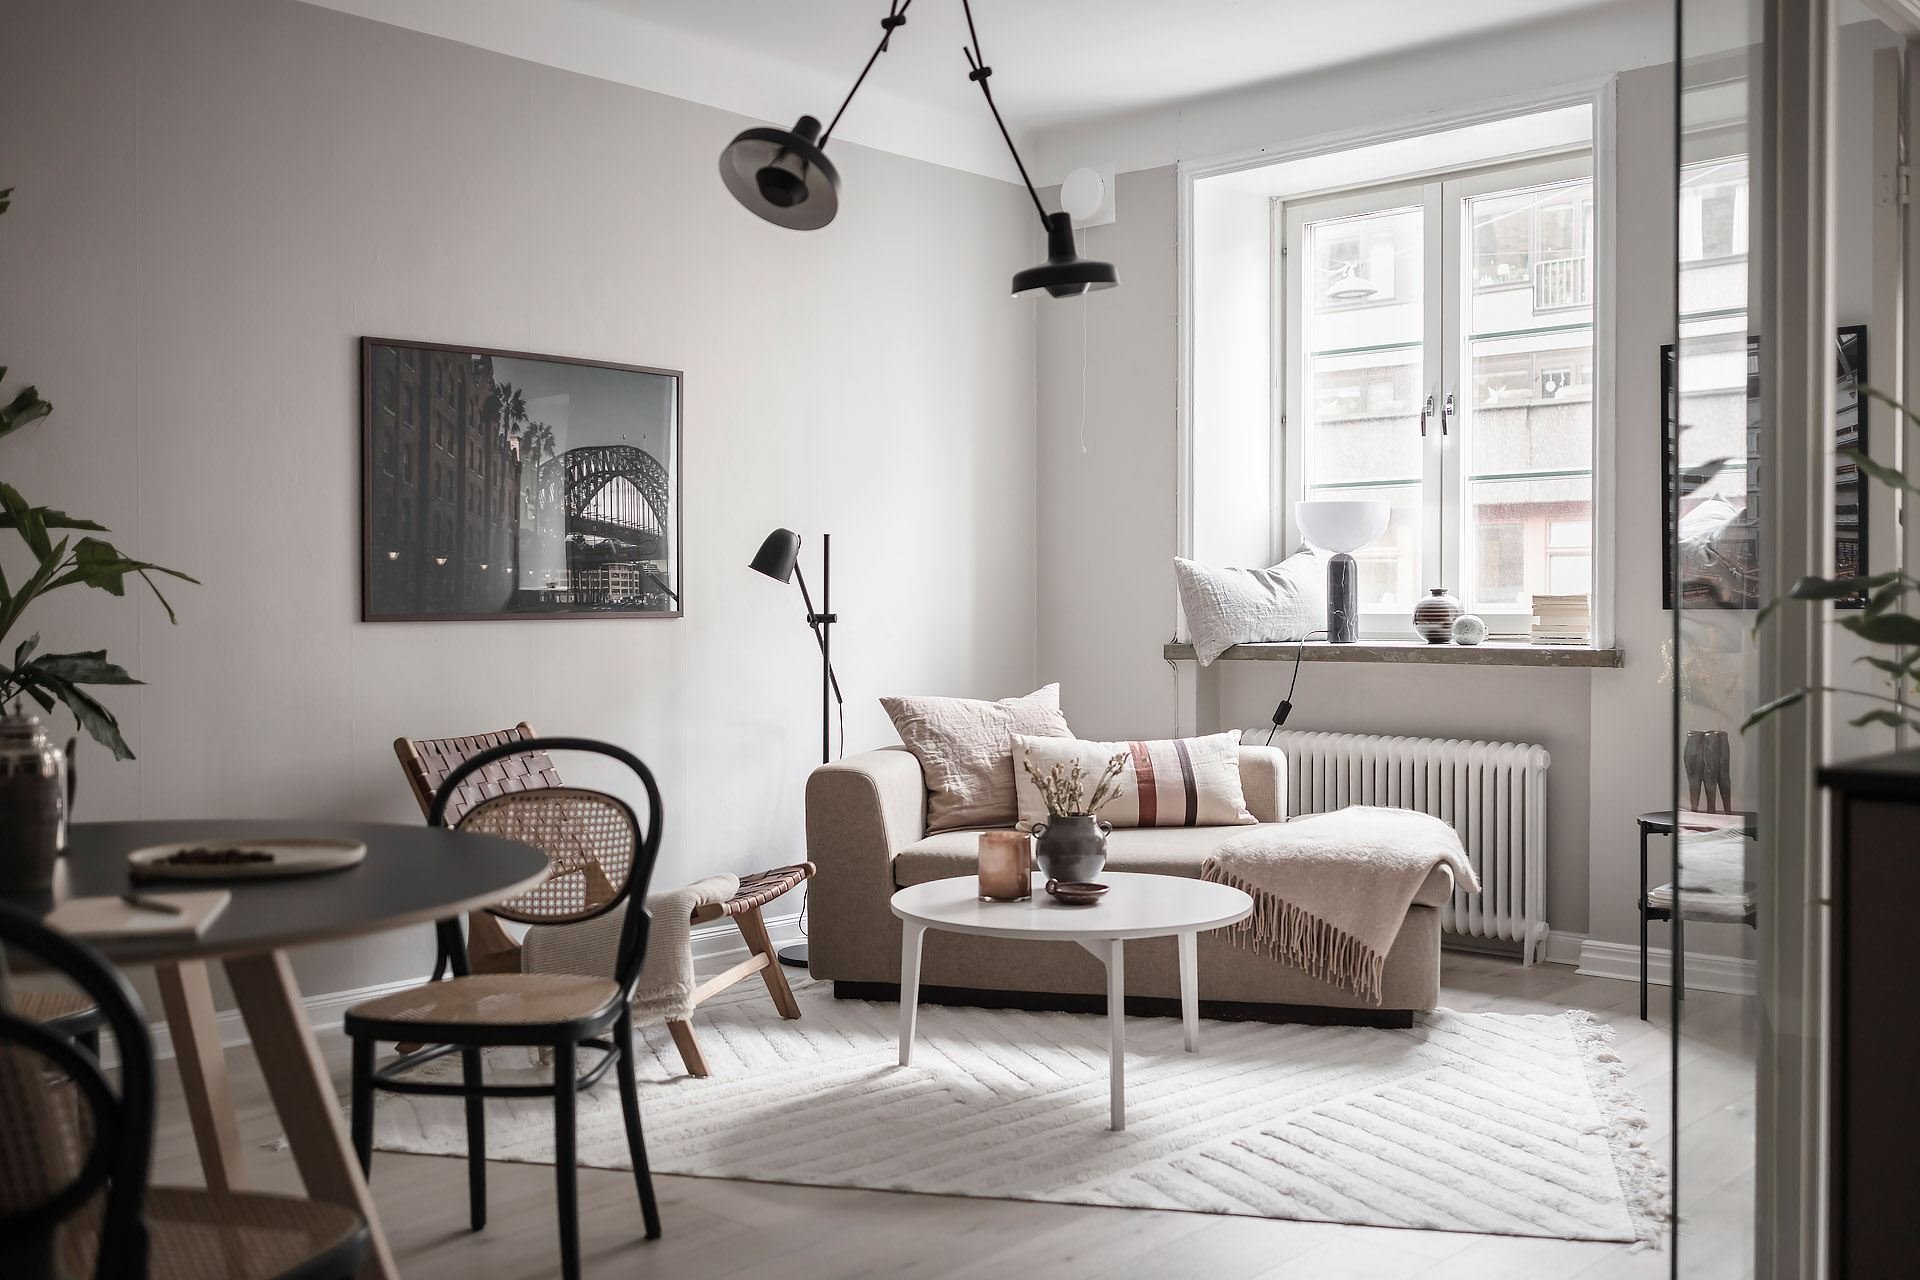 Piso en Estocolmo con paredes en gris y rosa cocina comedor salon lamparas de techo